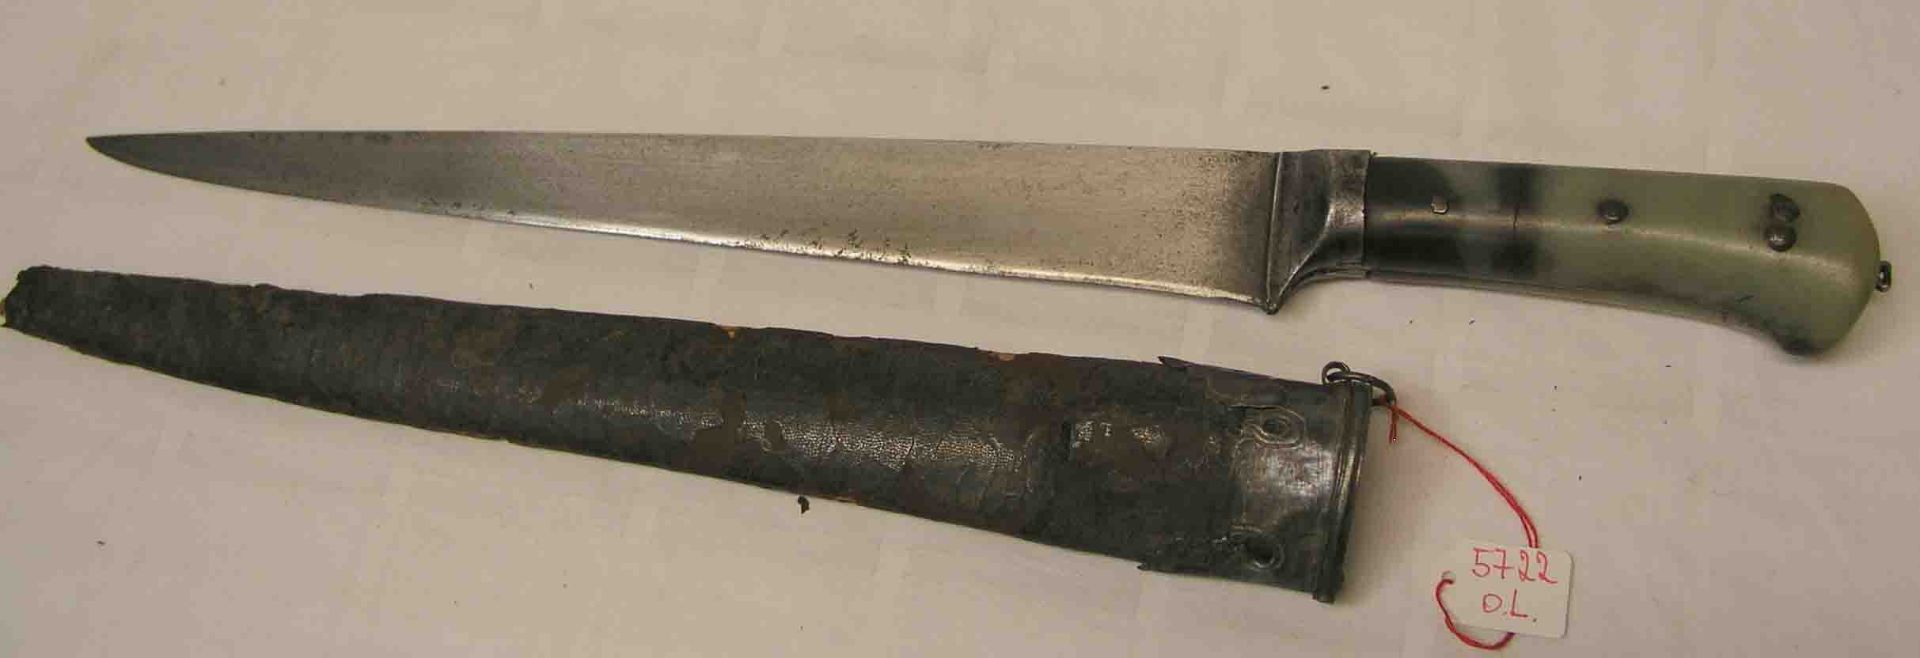 Orientalisches Messer. 19. Jh. Grün-bräunlicher Steingriff mit Sprung. Dazu: beschädigtesEtui,